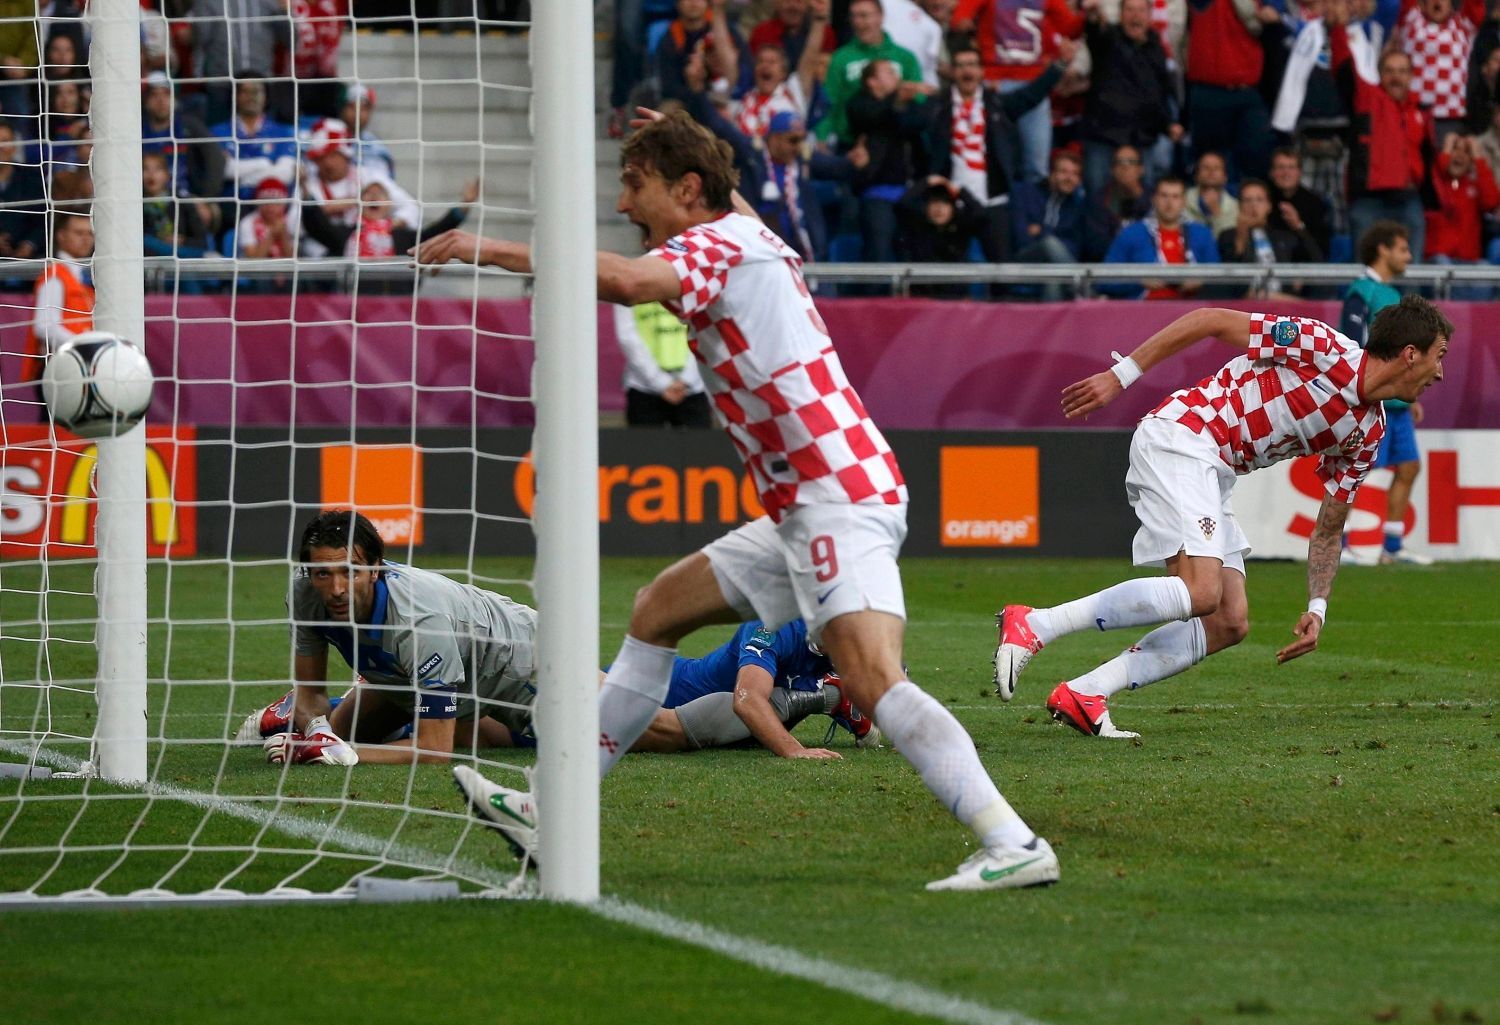 Nikica Jelavič a Mario Mandžukič se radují z gólu druhého z nich v utkání Chorvatska s Itálií ve skupině C na Euru 2012